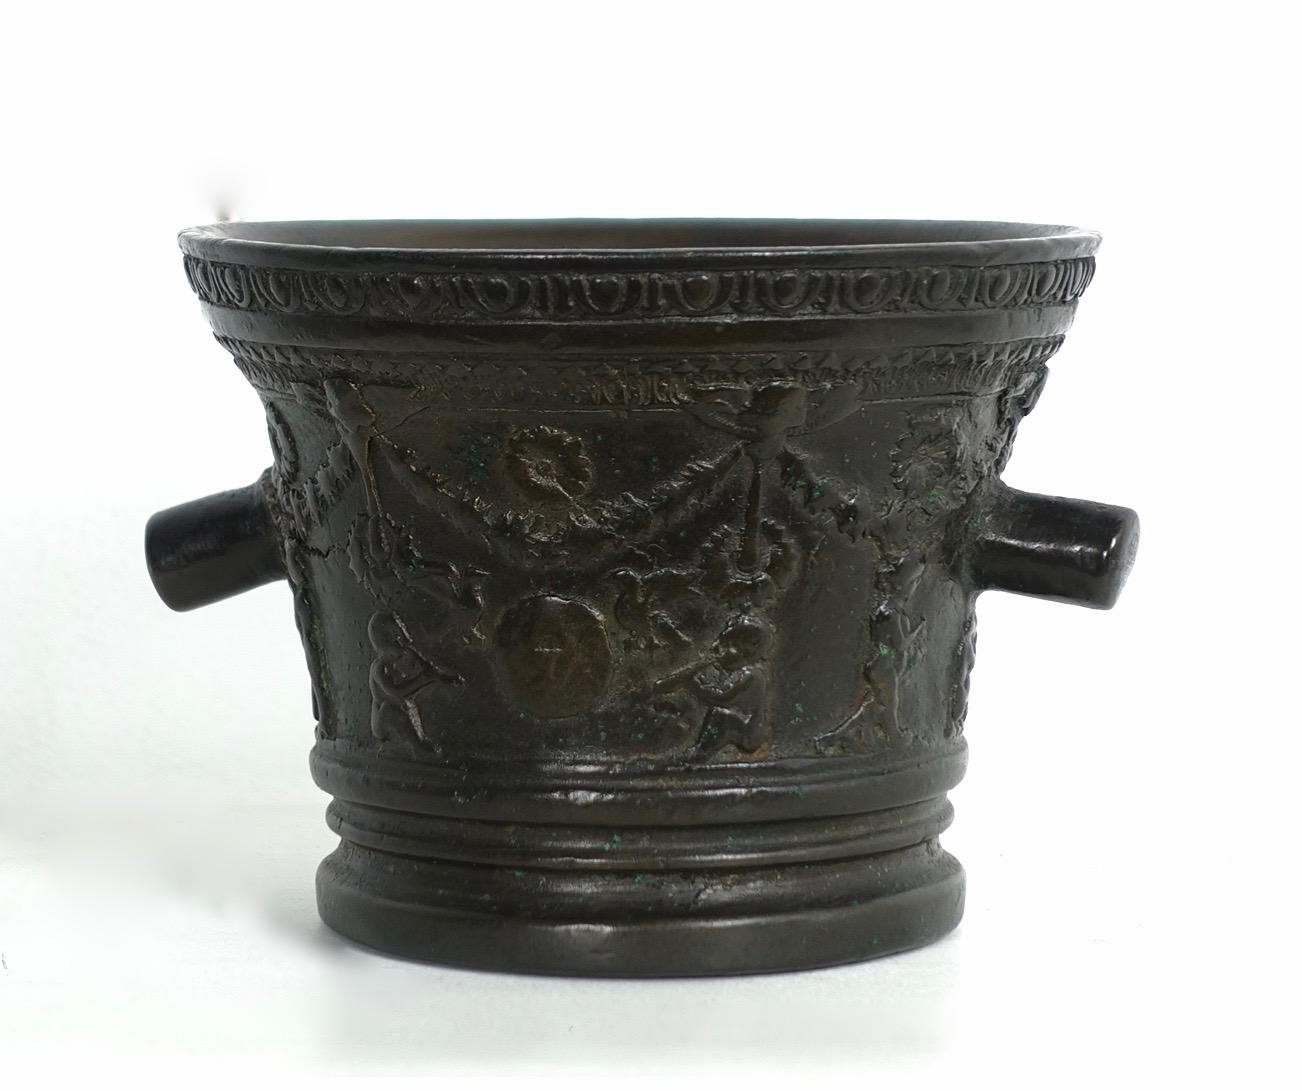 Mortier en bronze avec guirlandes, fleurs et putti - Toscane, seconde moitié du XVIIe siècle.
Dimensions : hauteur 10 
diamètre : 13 cm

Les artisans et les guérisseurs utilisaient des mortiers pour broyer les aliments, les teintures et les